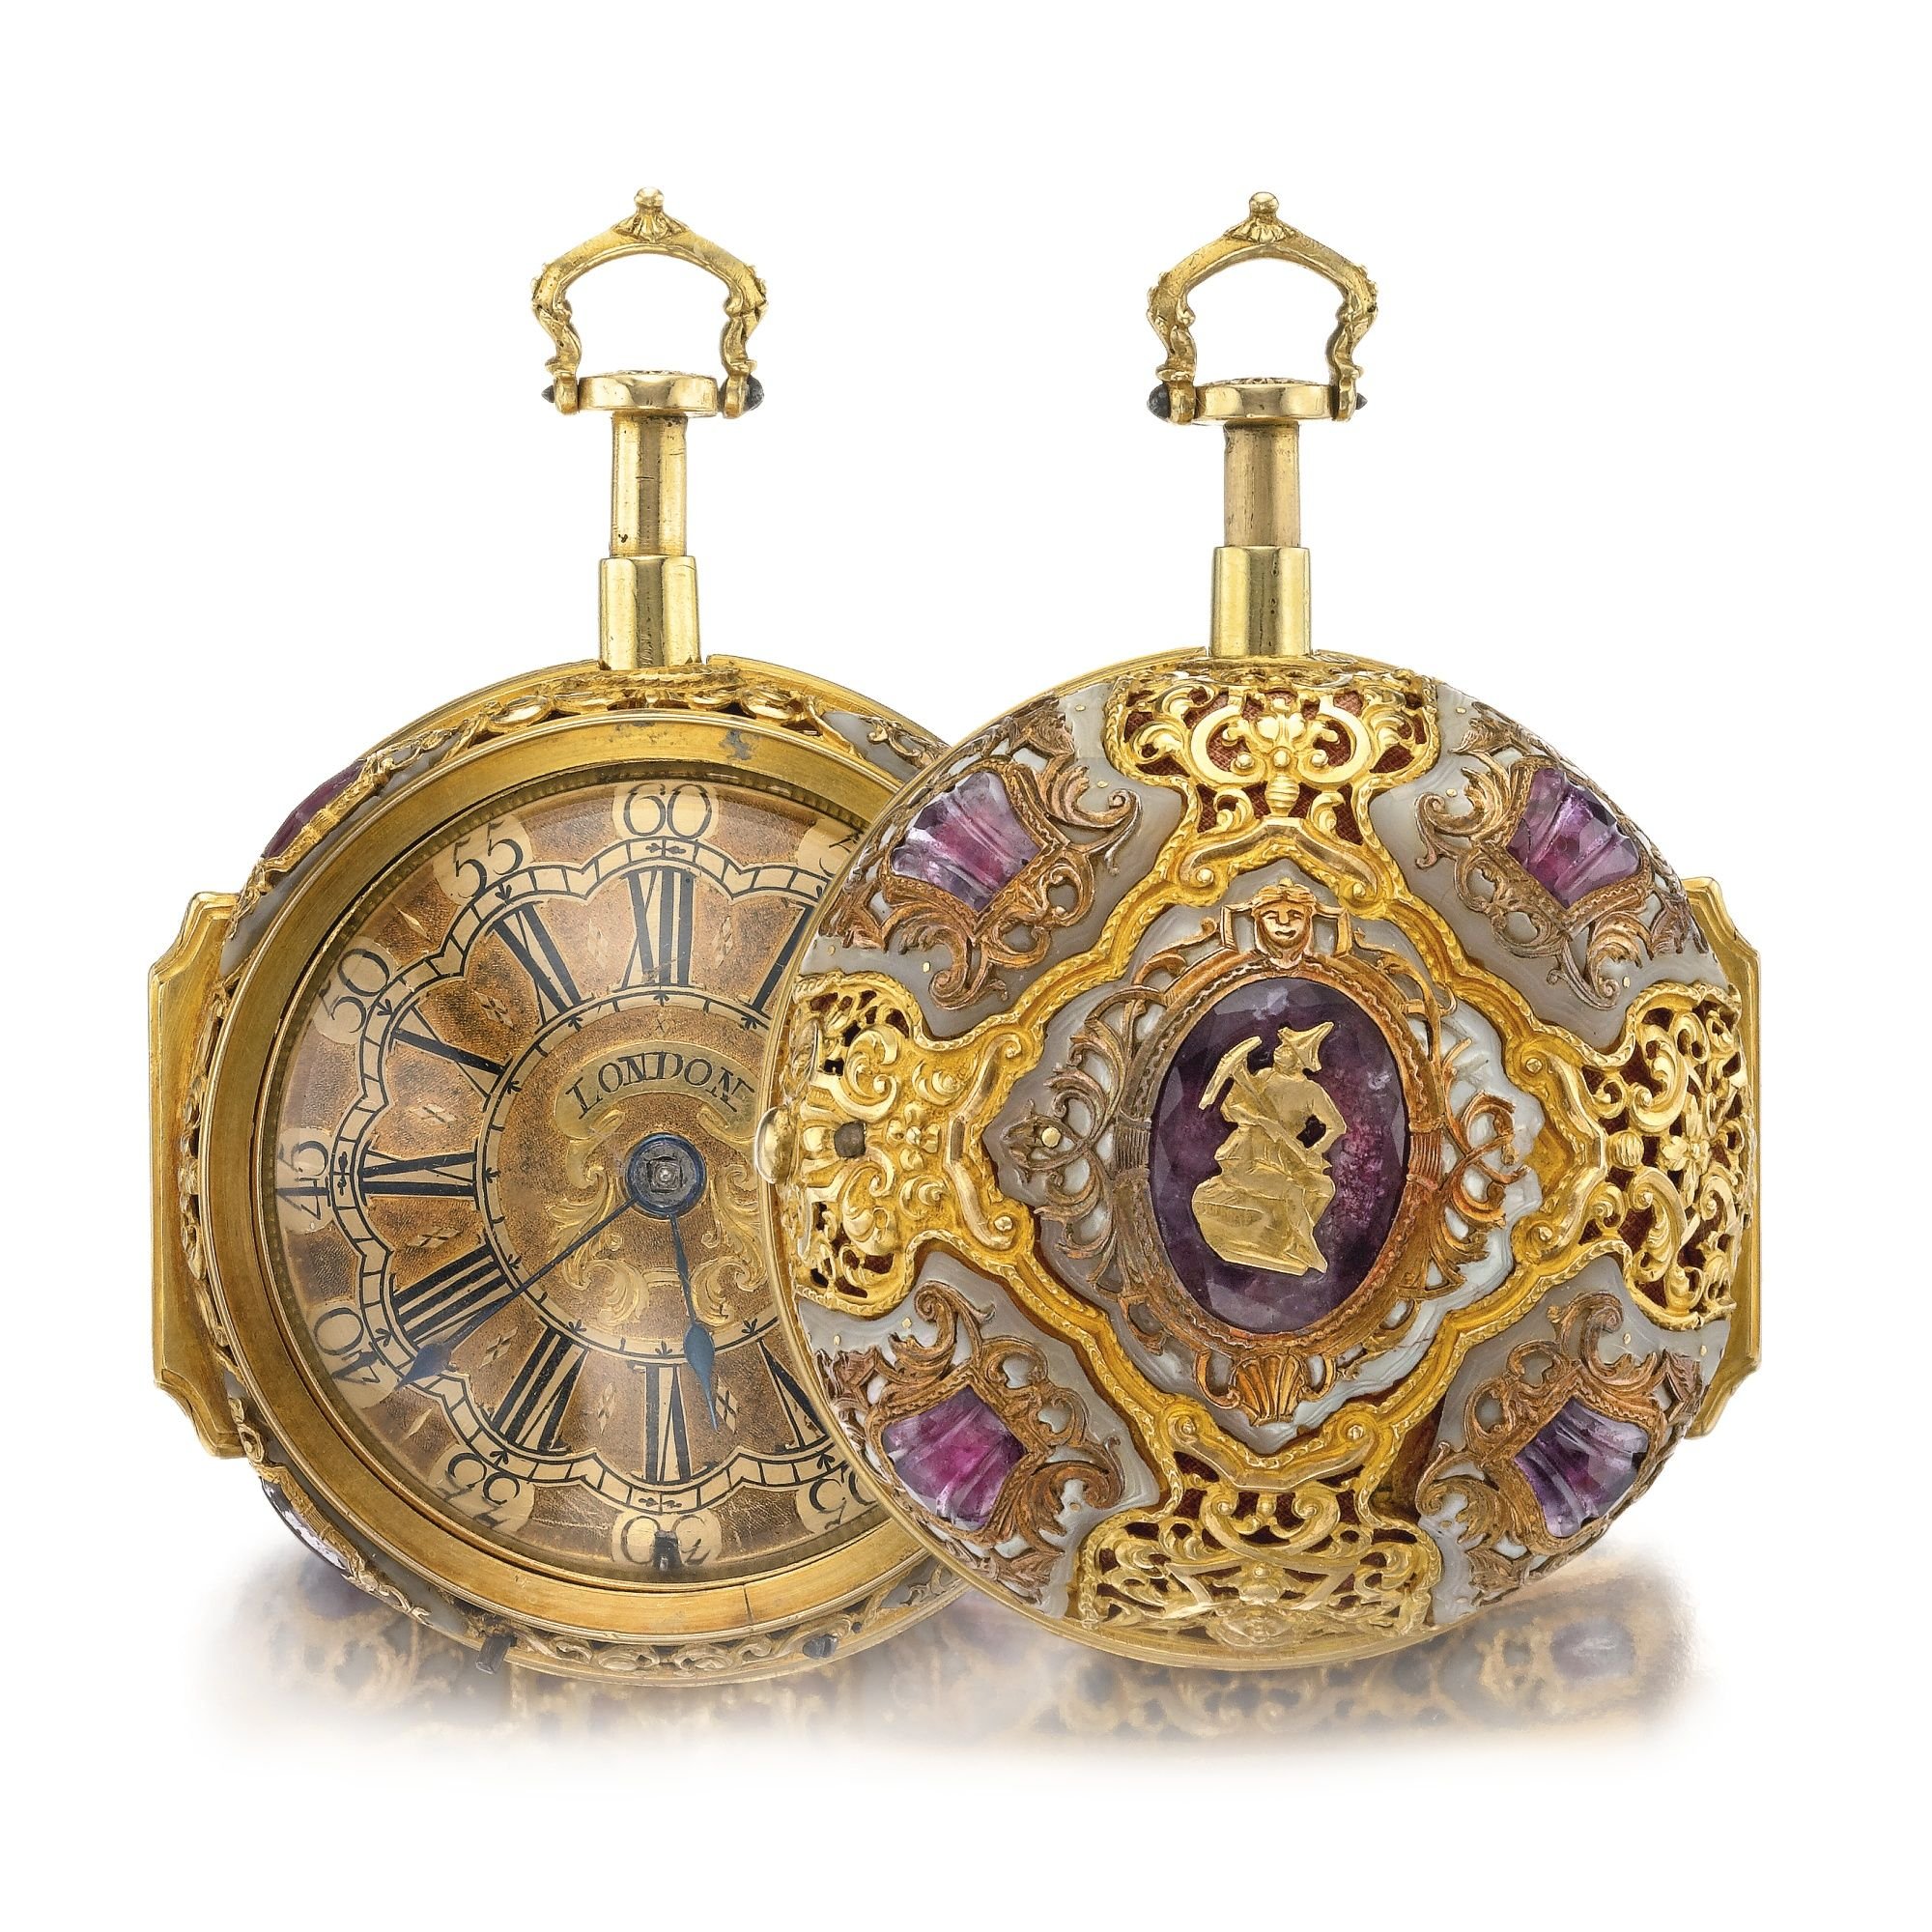 Произведение часы и зеркало. Карманные часы 1720 - 1840-х годов.. Ювелирные украшения часы. Ювелирное украшение карманные часы. Старинные часы.